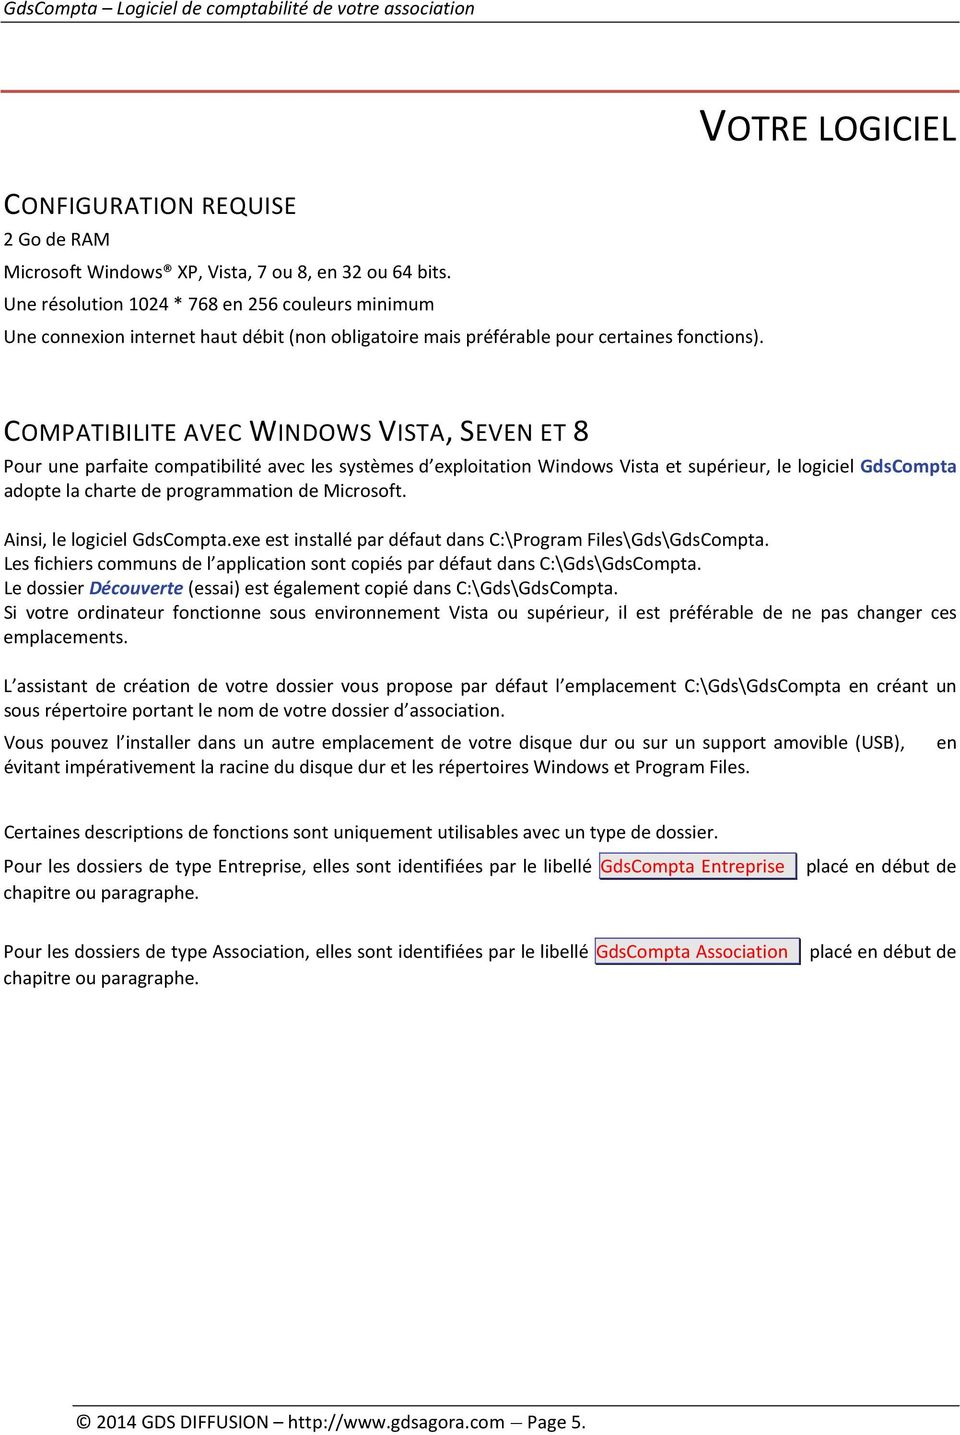 COMPATIBILITE AVEC WINDOWS VISTA, SEVEN ET 8 Pour une parfaite compatibilité avec les systèmes d exploitation Windows Vista et supérieur, le logiciel GdsCompta adopte la charte de programmation de